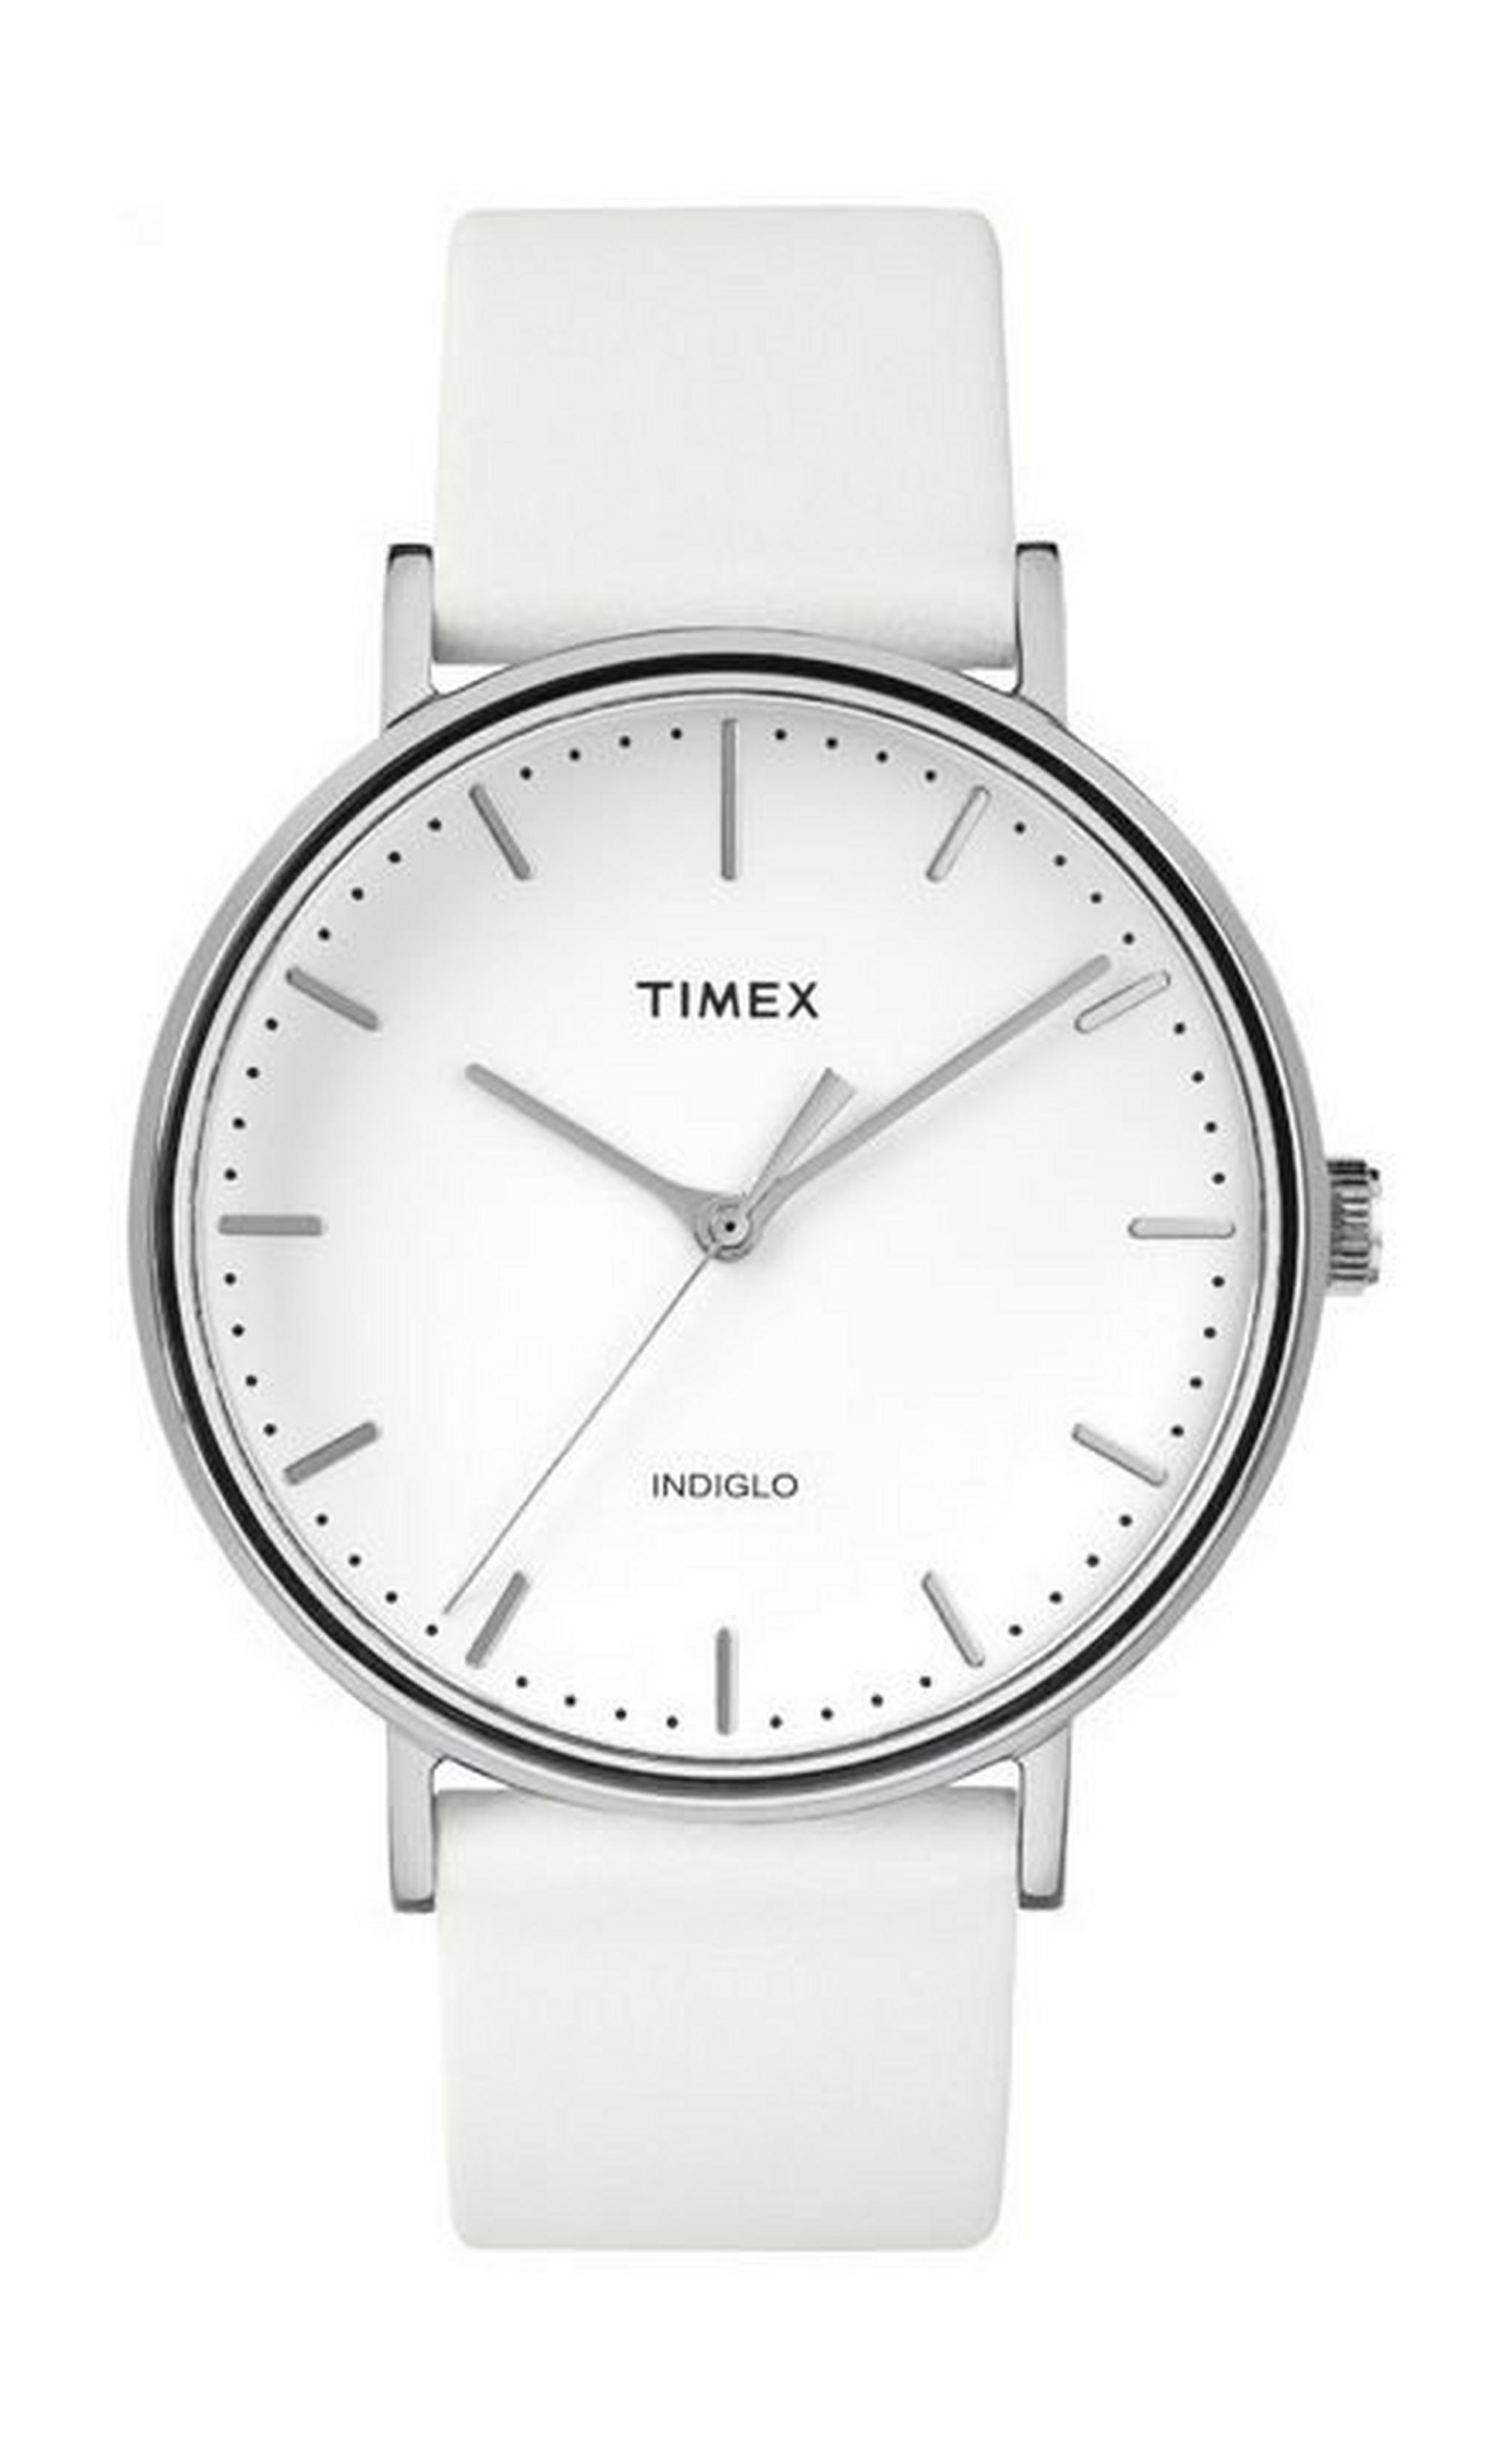 ساعة تايمكس فيرفيلد للجنسين بعرض كرونوغراف وحزام جلدي – أبيض (TW2R26100)